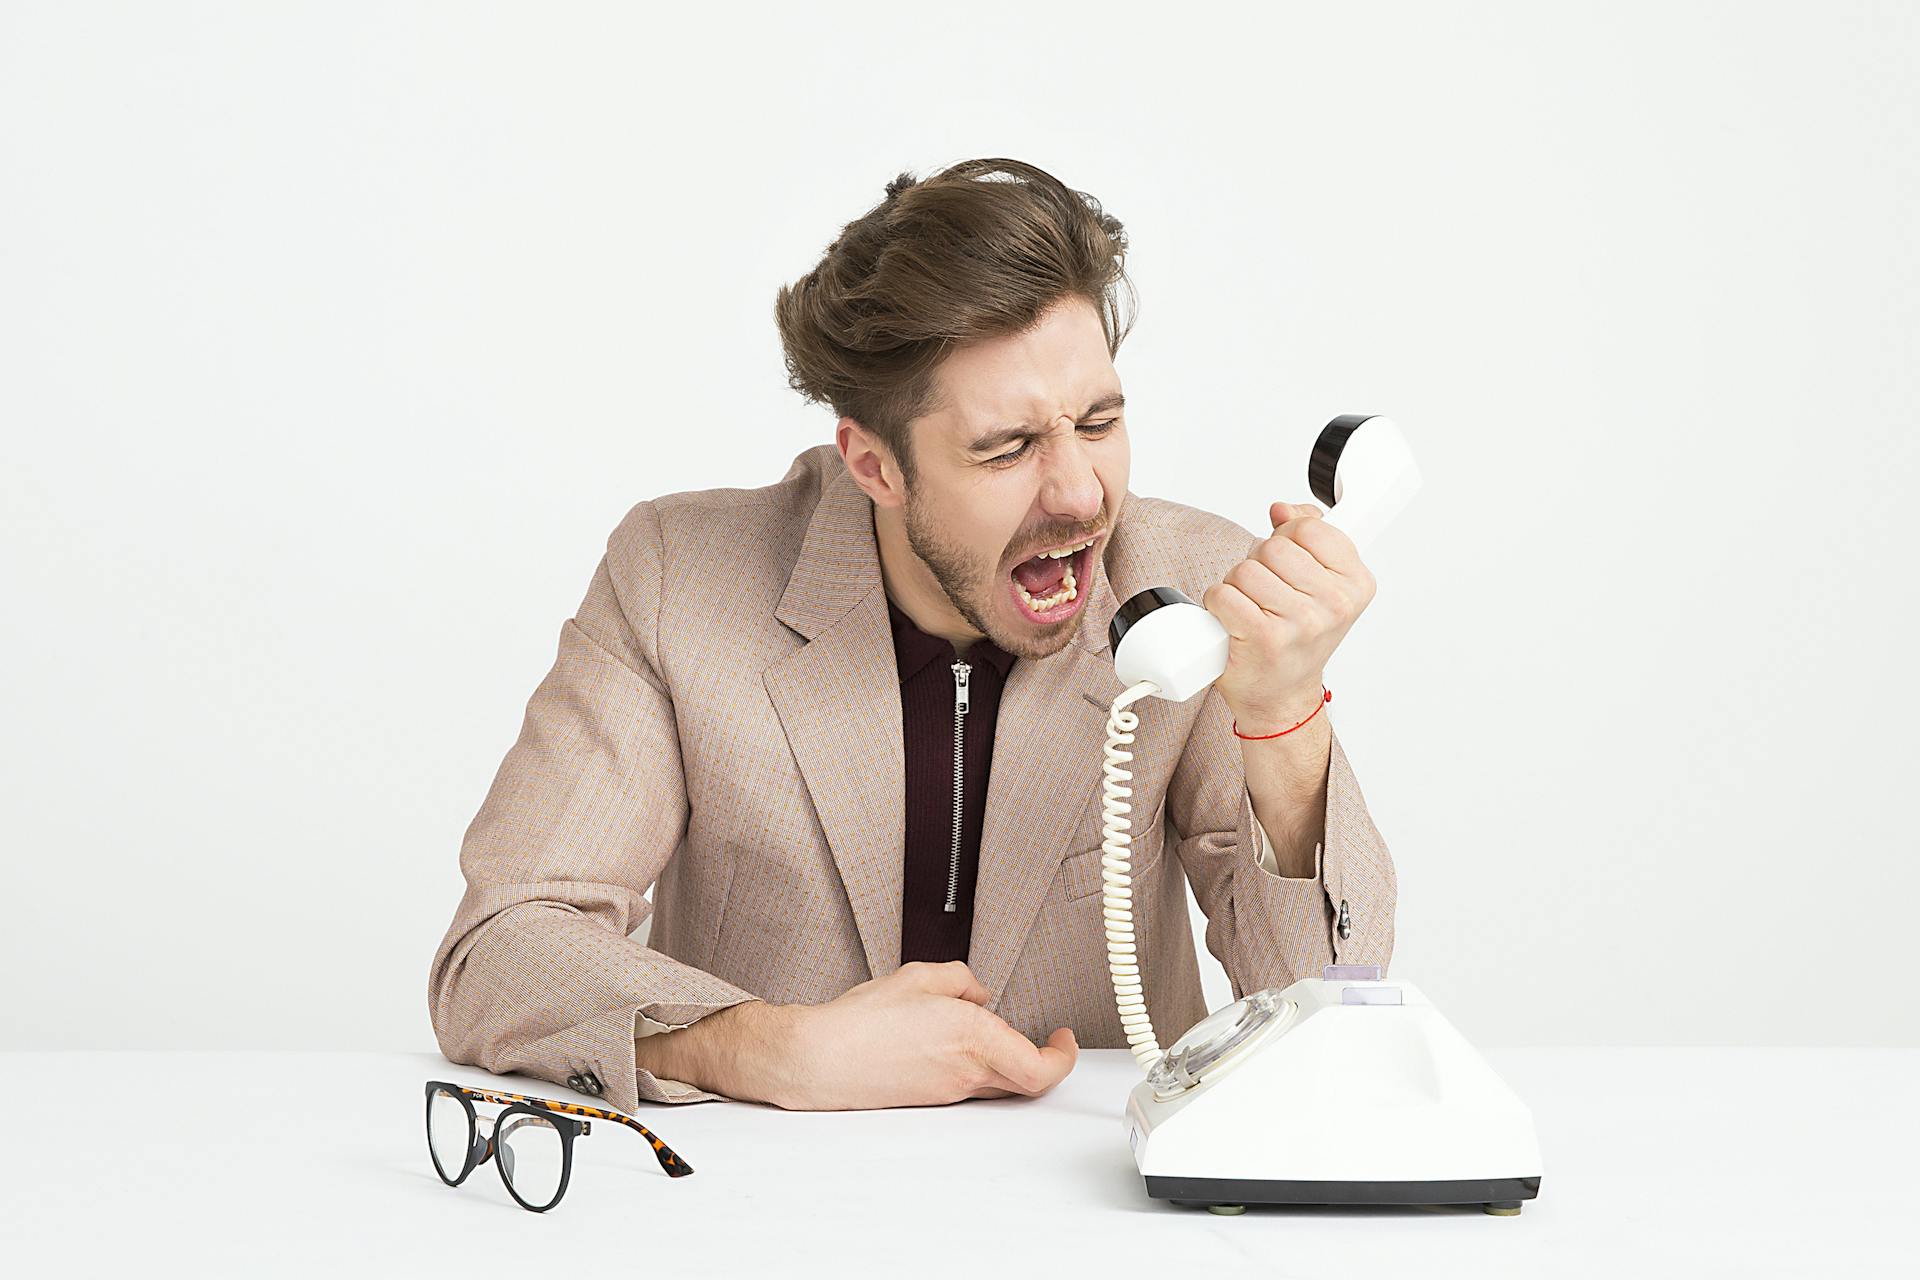 Un homme qui crie en tenant un appareil téléphonique noir et blanc | Source : Pexels